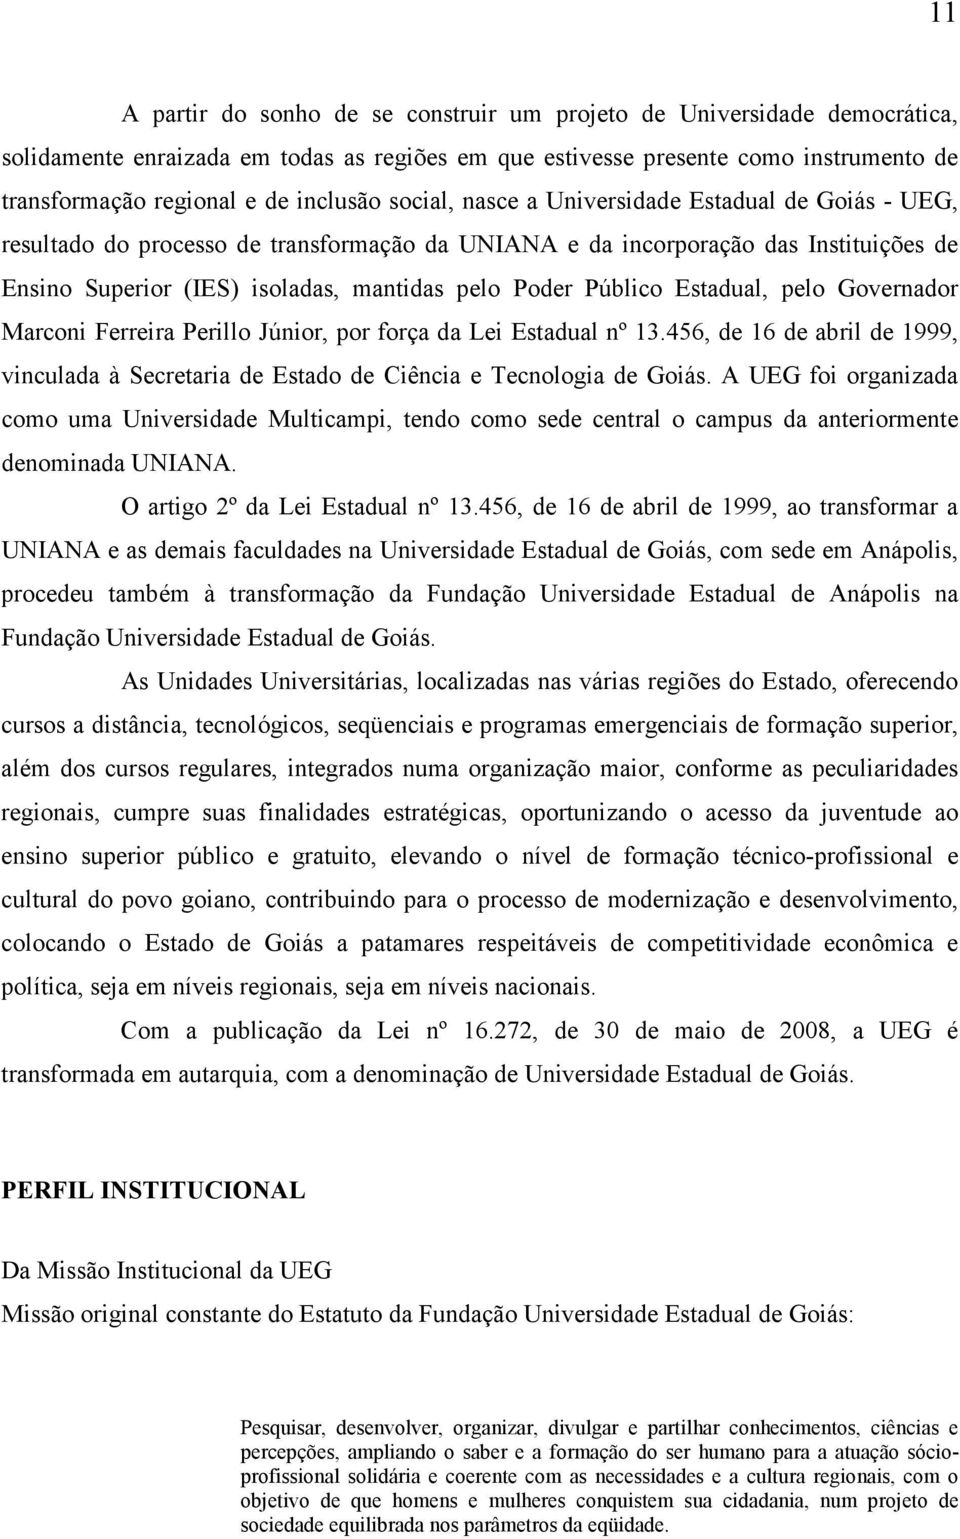 Poder Público Estadual, pelo Governador Marconi Ferreira Perillo Júnior, por força da Lei Estadual nº 13.456, de 16 de abril de 1999, vinculada à Secretaria de Estado de Ciência e Tecnologia de Goiás.